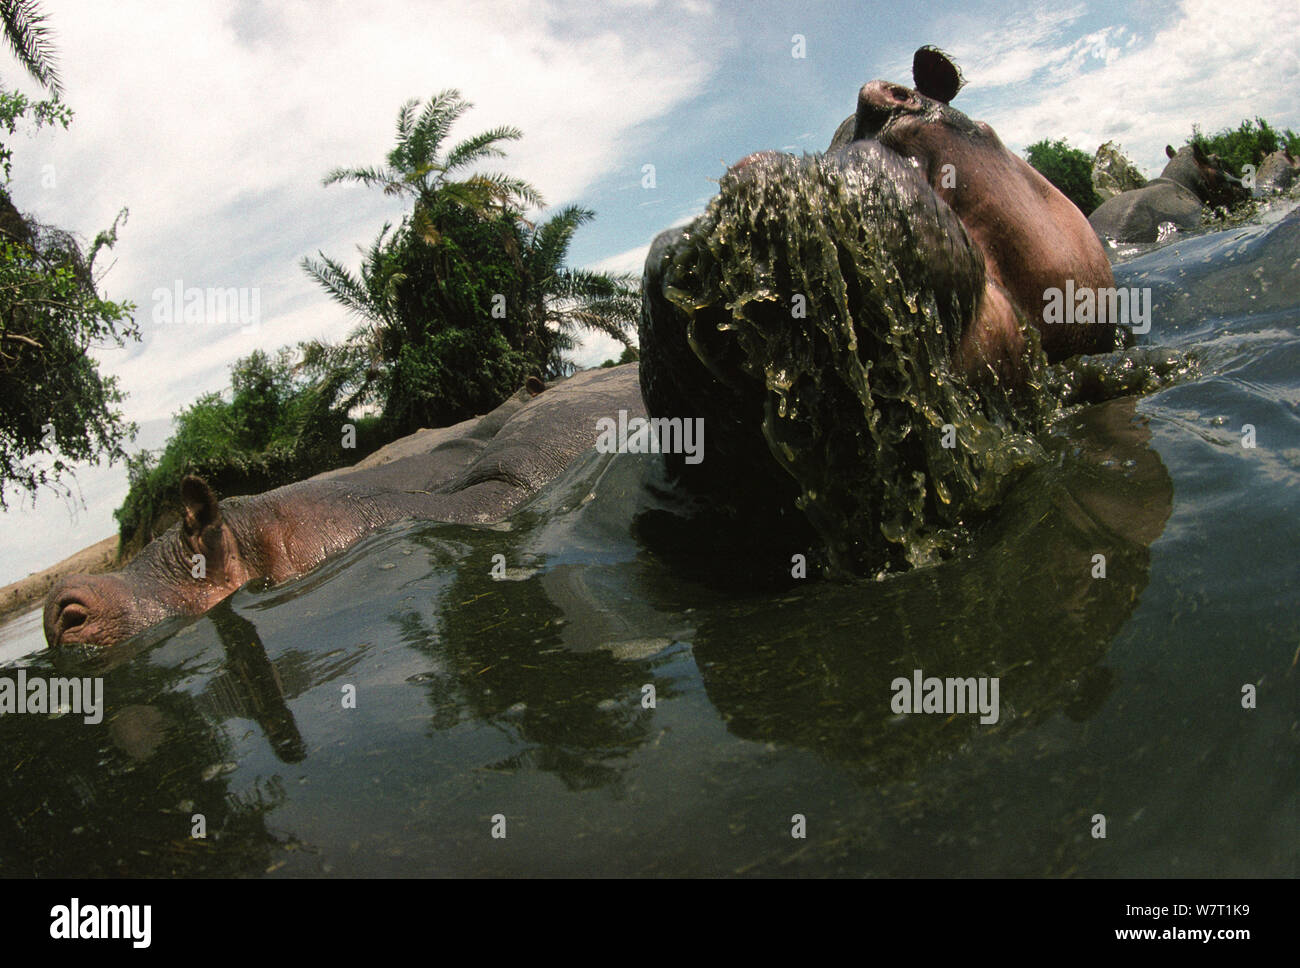 Tiros de ángulo bajo una manada de hipopótamos (Hippopotamus amphibius) alimentación en el río Rutshuru, antes del sacrificio de los hipopótamos en la región durante el derrocamiento del Presidente Mobutu Sese Seko a mediados de la década de 1990, el Parque Nacional de Virunga, en la República Democrática del Congo. Foto de stock